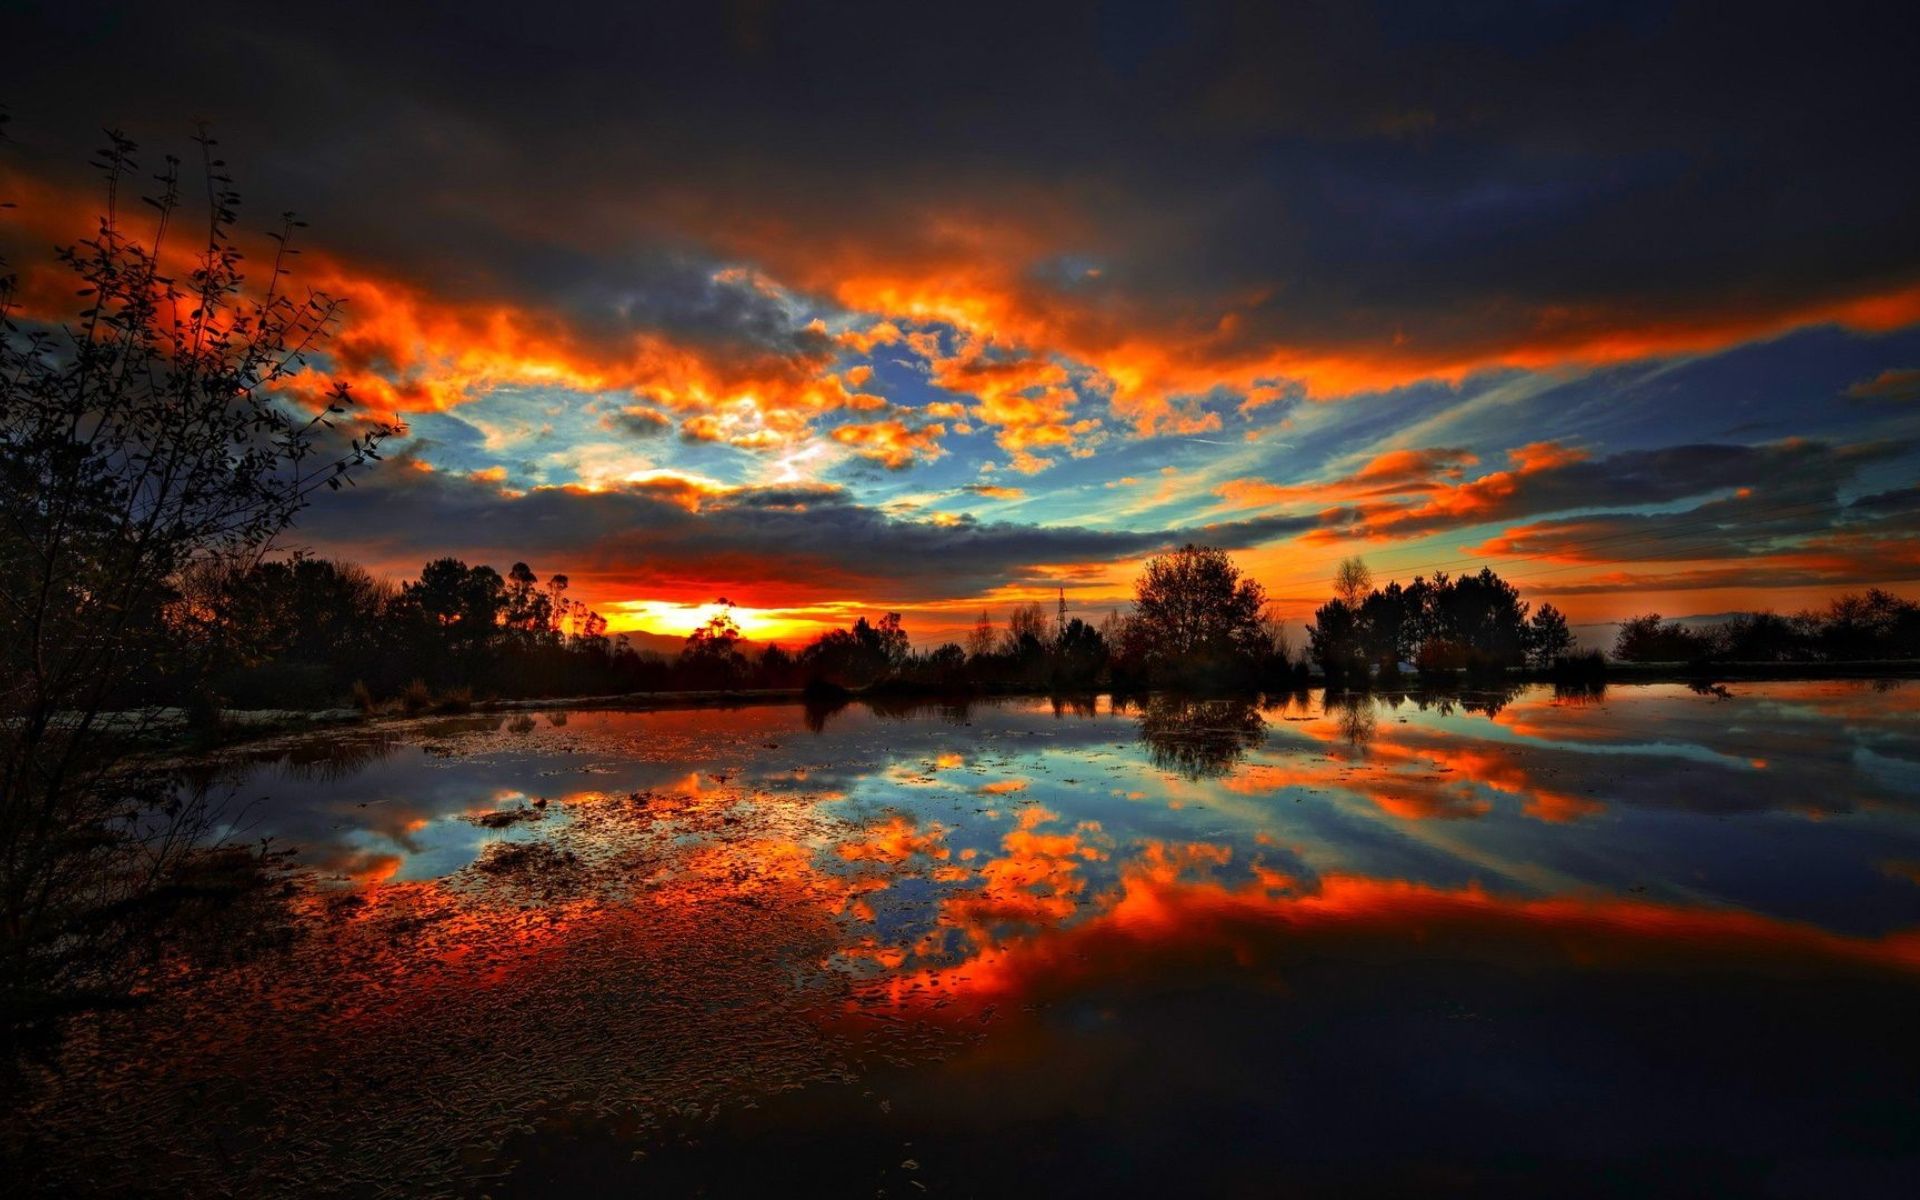  Sonnenuntergang Hintergrundbild 1920x1200. Kostenlose Hintergrundbilder Malerischer Sonnenuntergang, Sonnenuntergang, Sonnenaufgang, Cloud, Wasser, Bilder Für Ihren Desktop Und Fotos